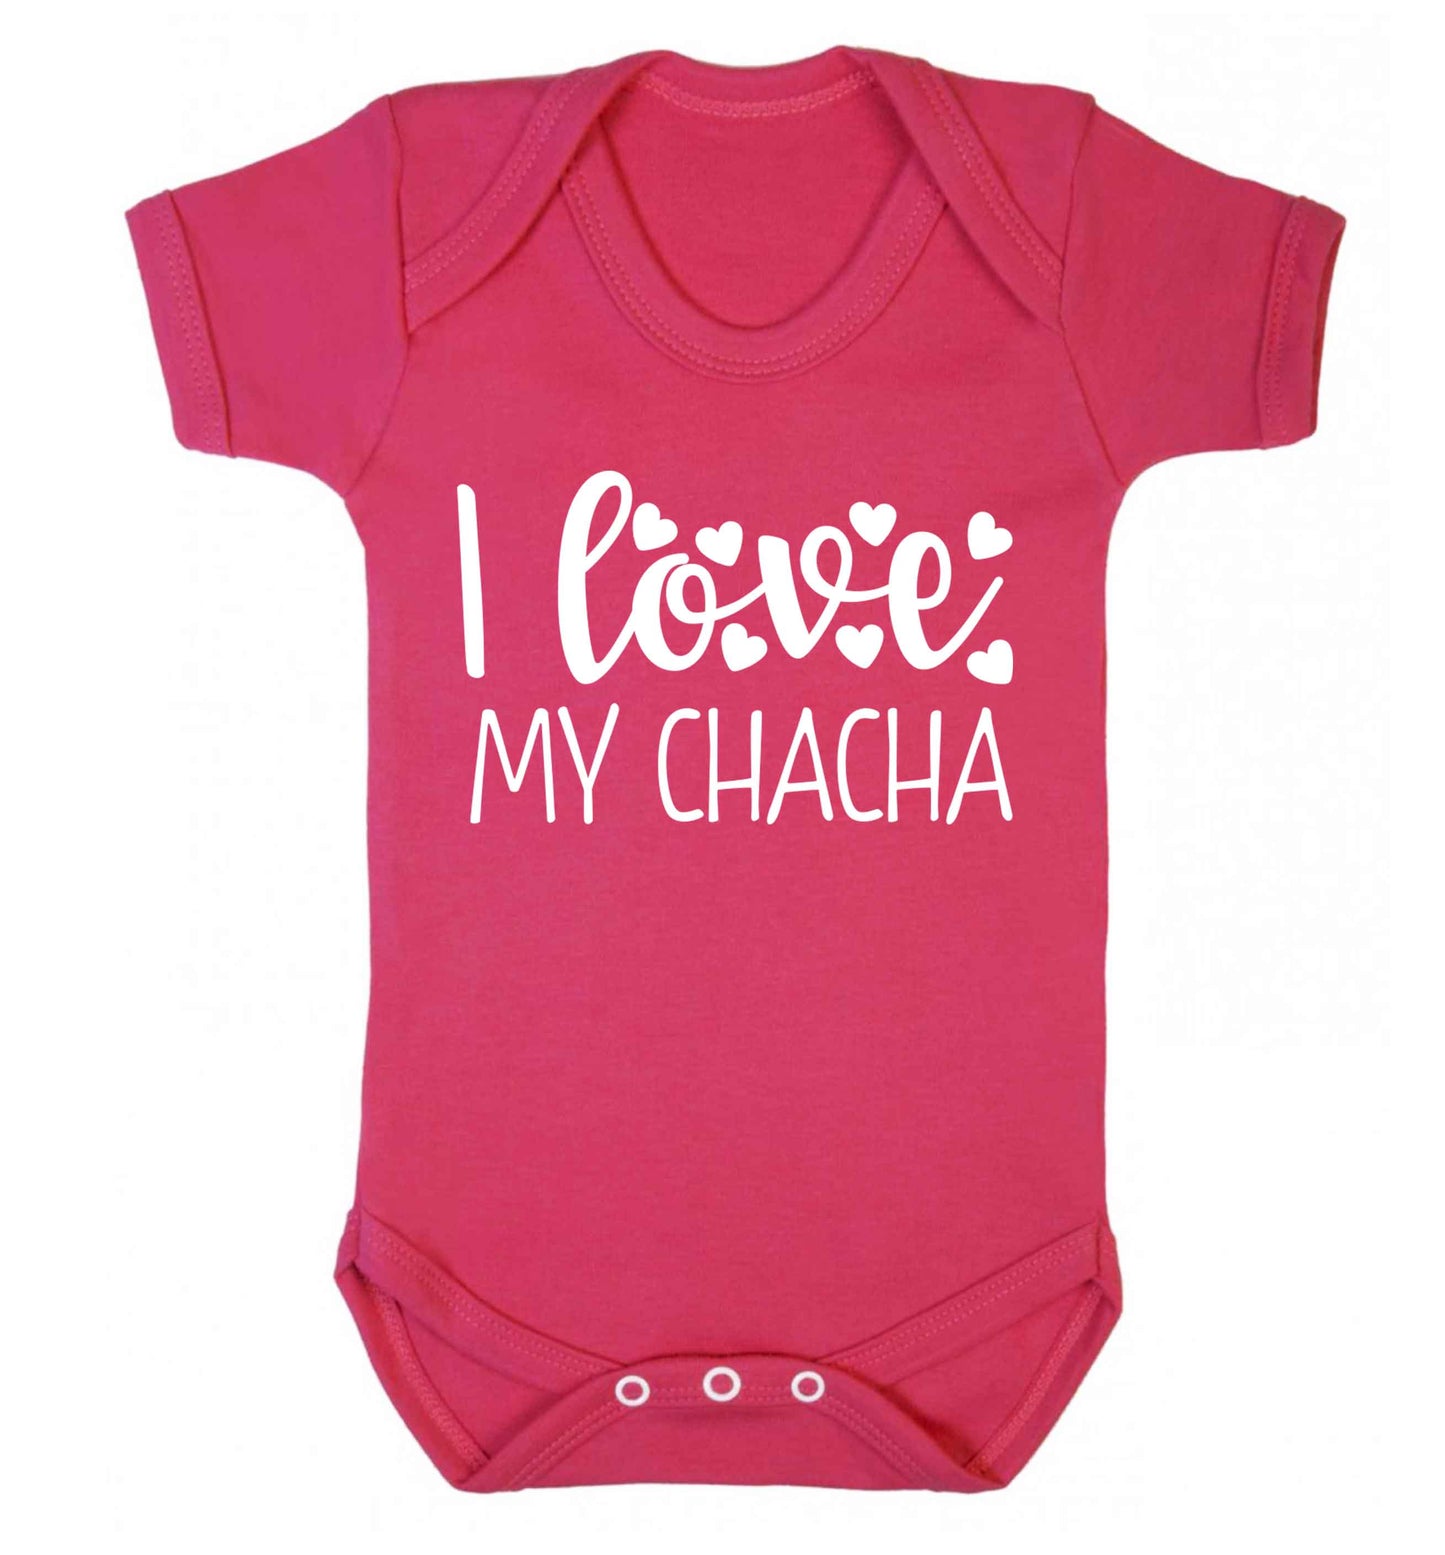 I love my chacha Baby Vest dark pink 18-24 months